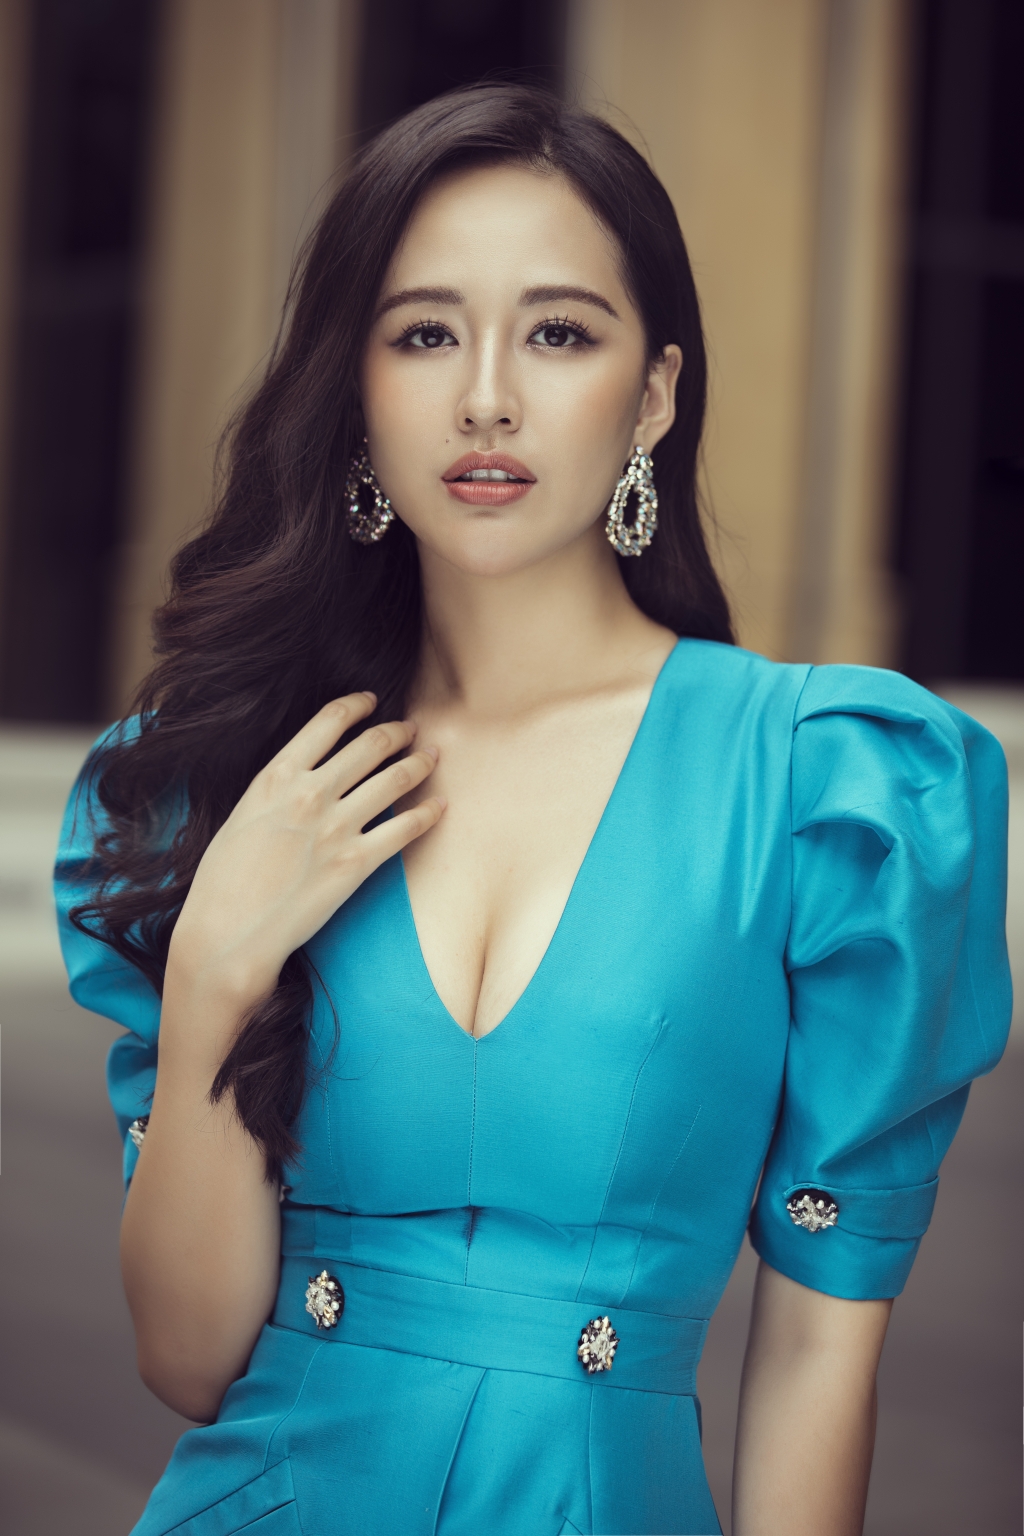 Mai Phương Thúy chính thức trở thành giám khảo Miss World Vietnam 2021